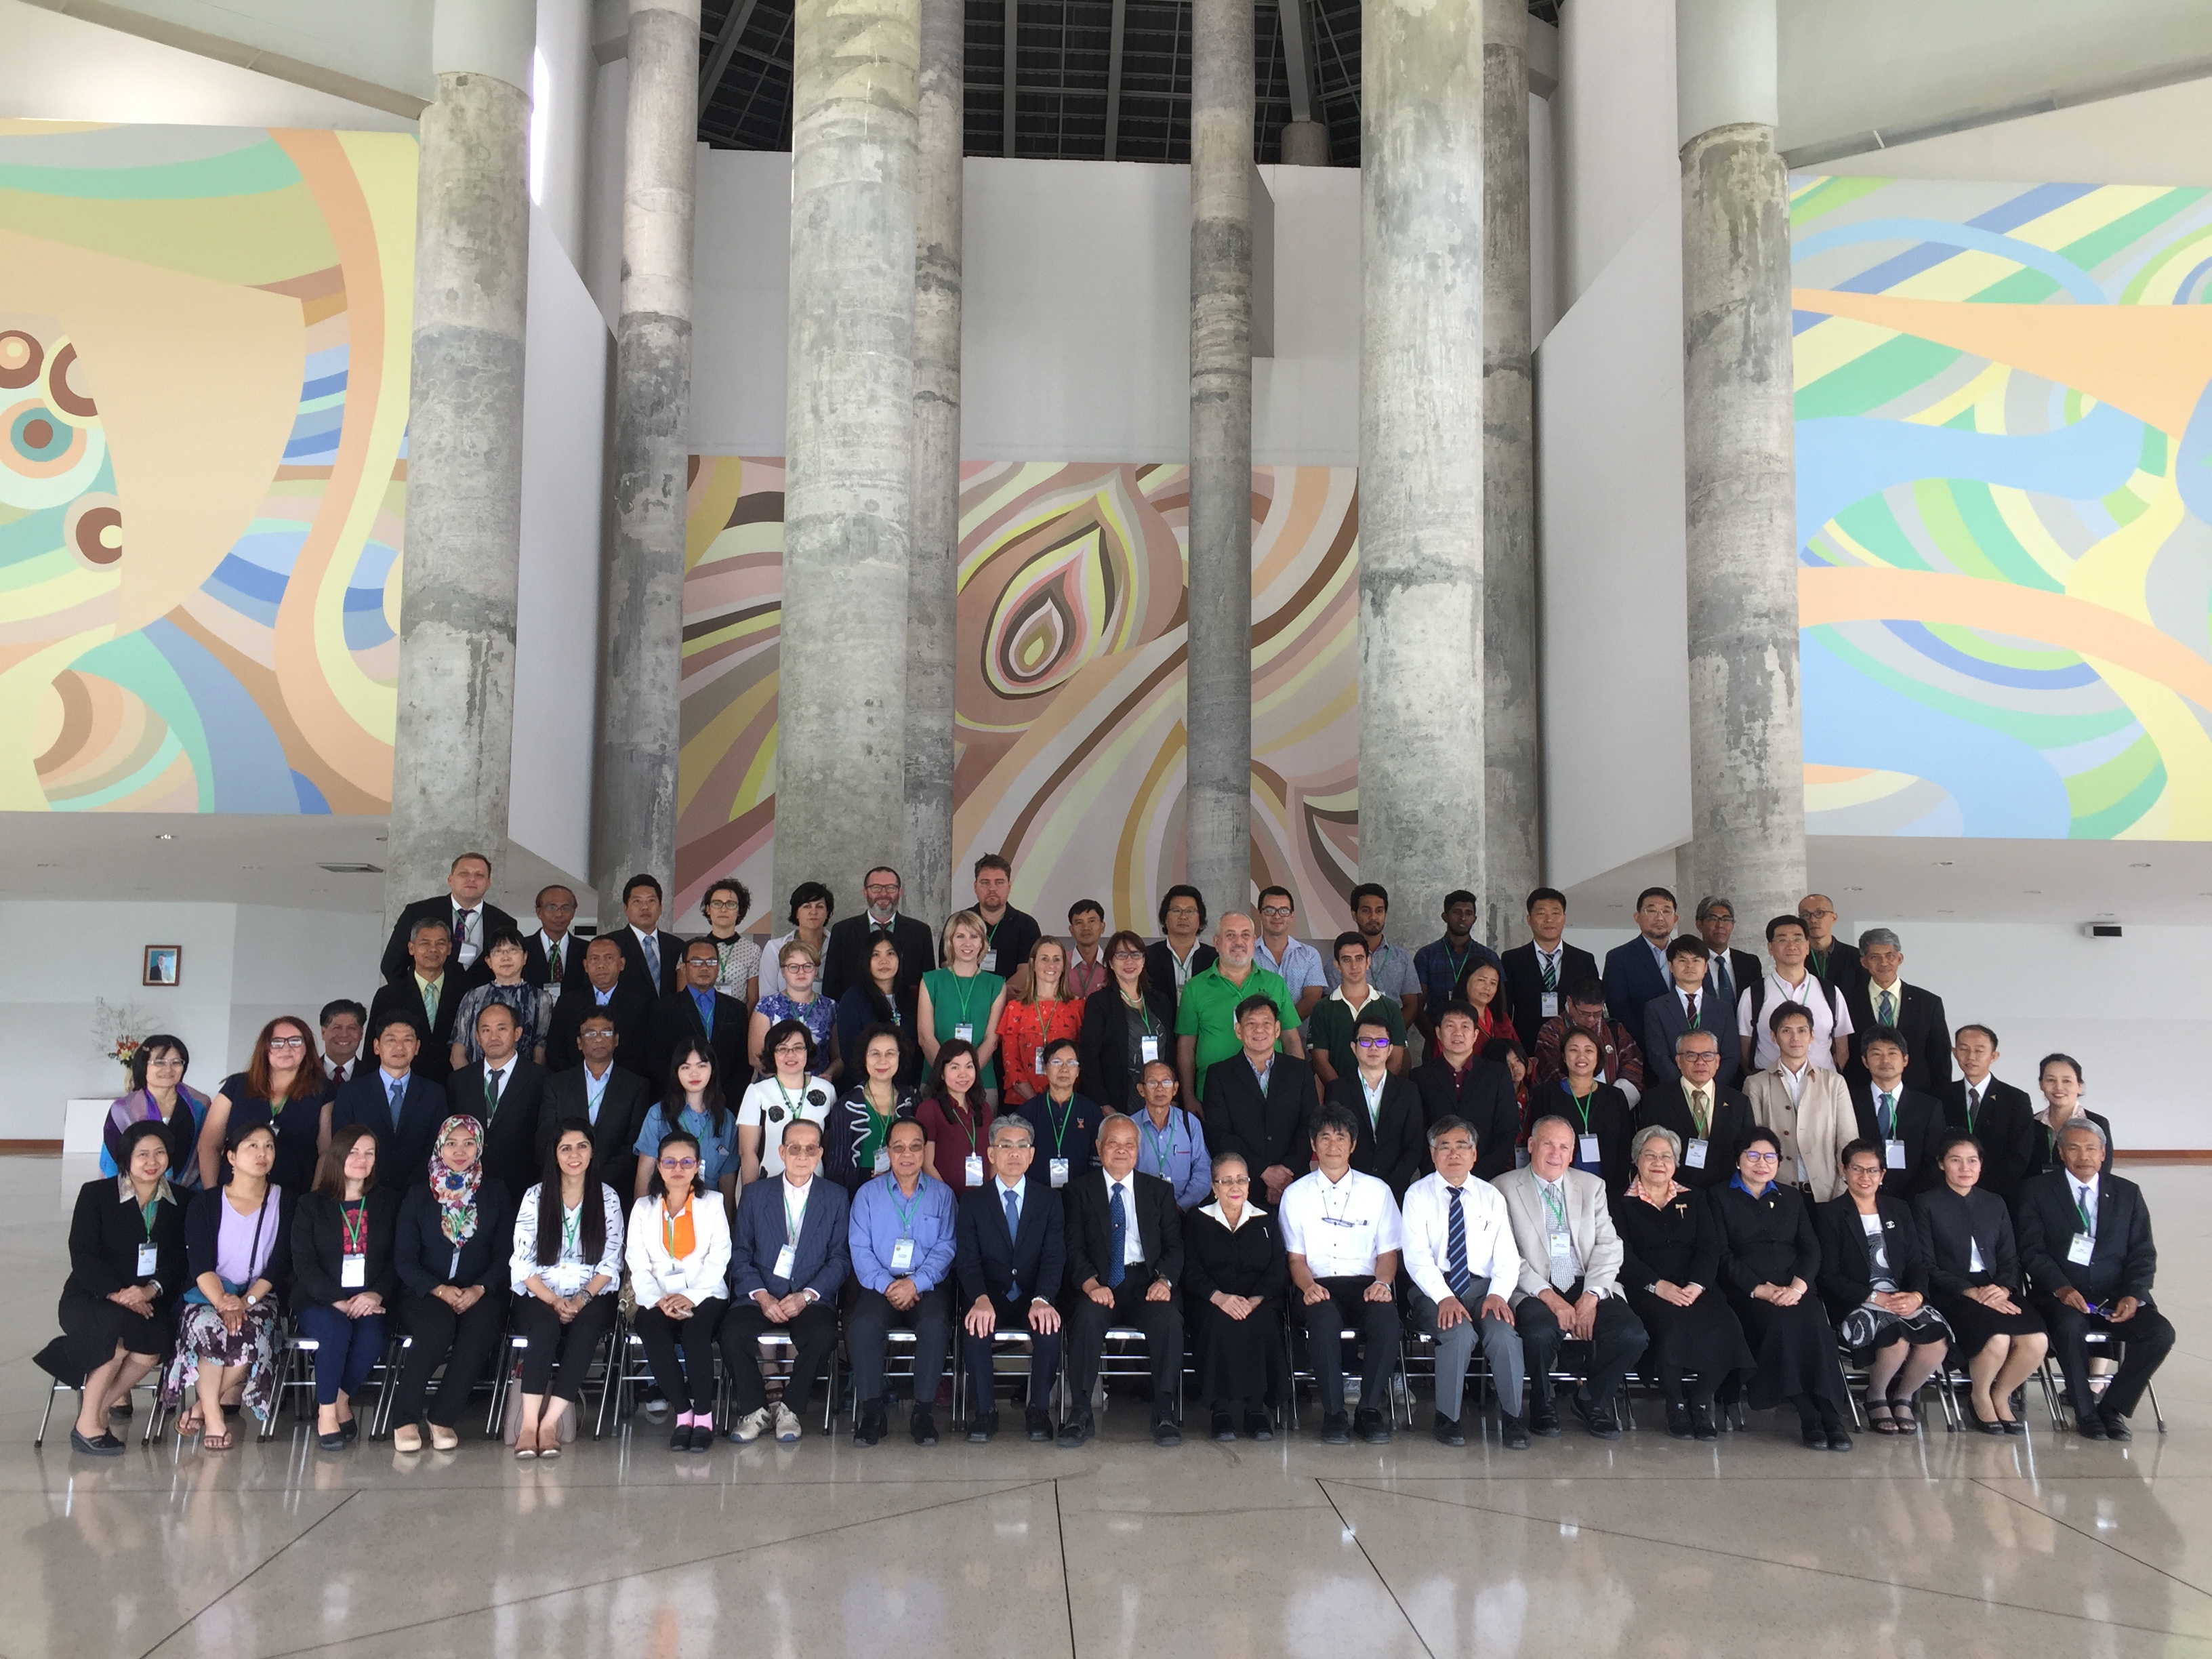 APNAN Meeting 2018 was held in Thailand